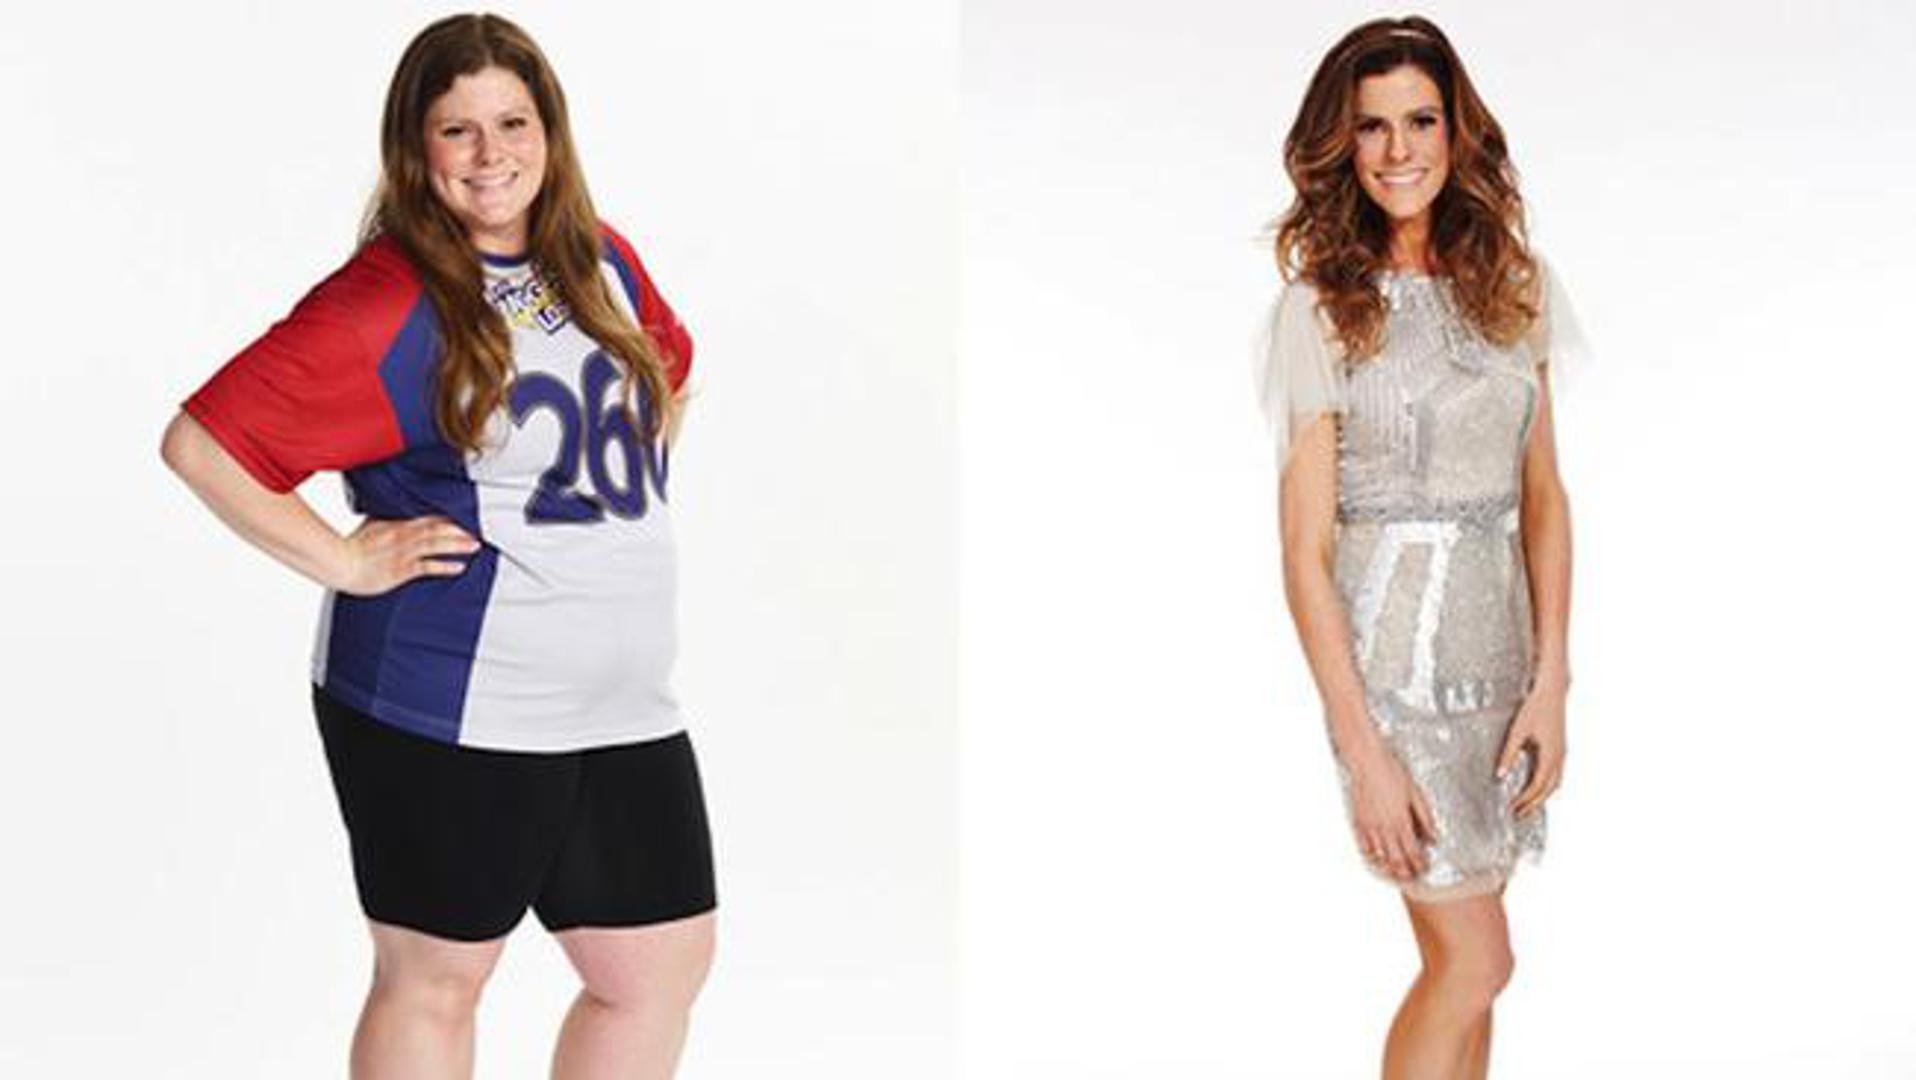 Rachel Frederickson, zvijezda američke verzije showa, izgubila je gotovo 60% vlastite težine. Imala je 117 kg, a iz showa je izašla s nevjerojatnih 47 kg pa su je mnogi prozivali zbog anoreksije. 